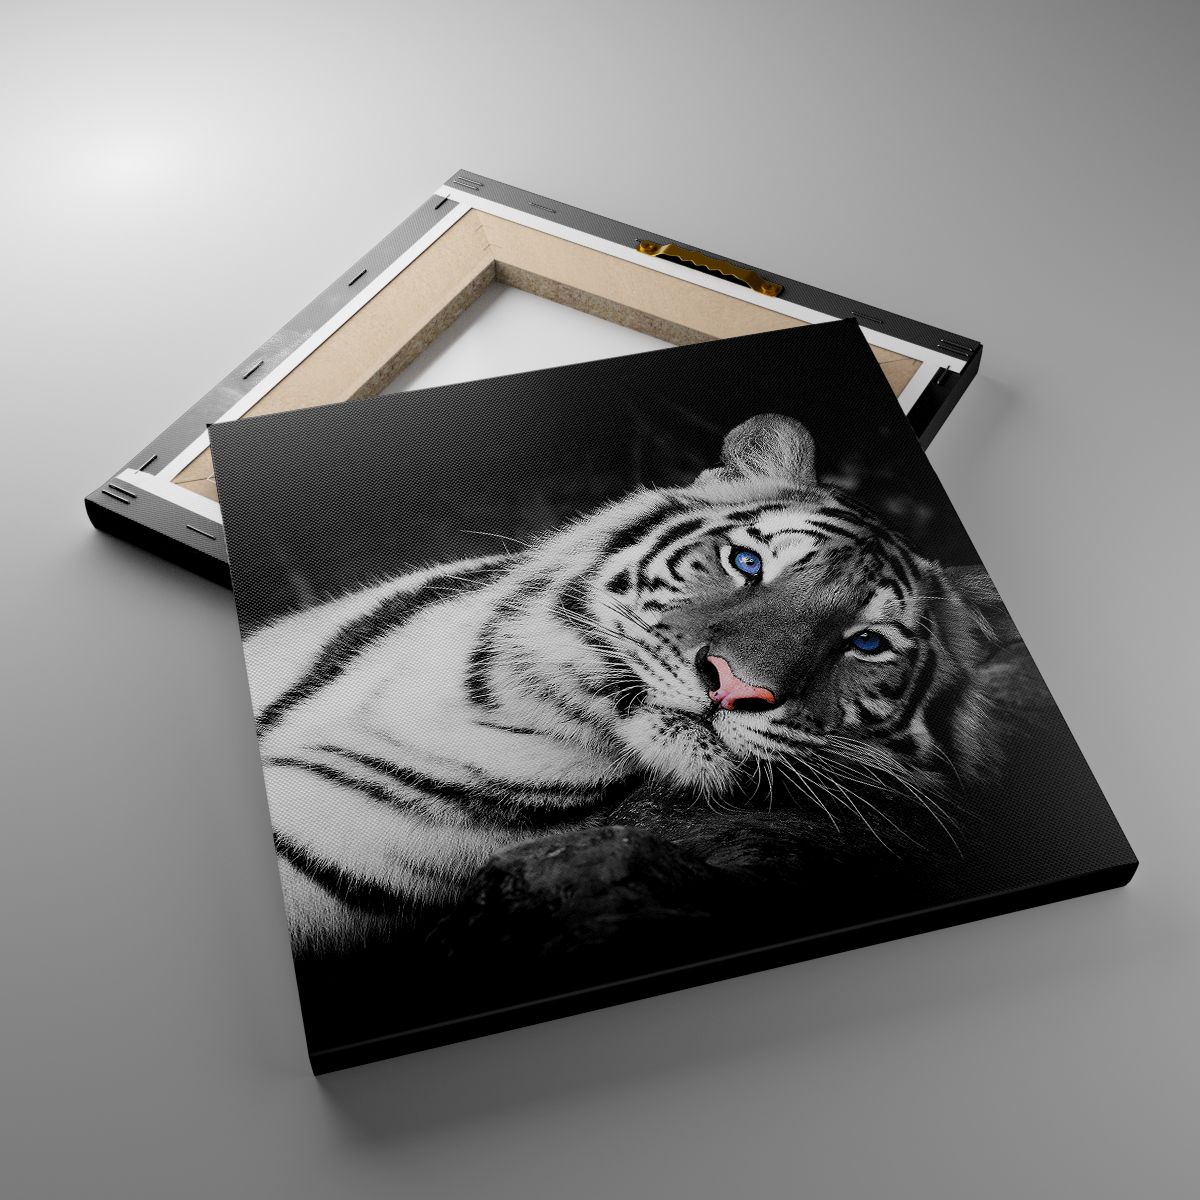 Obrazy Tygrys Biały, Obrazy Tygrys, Obrazy Zwierzęta, Obrazy Natura, Obrazy Czarno-Biały